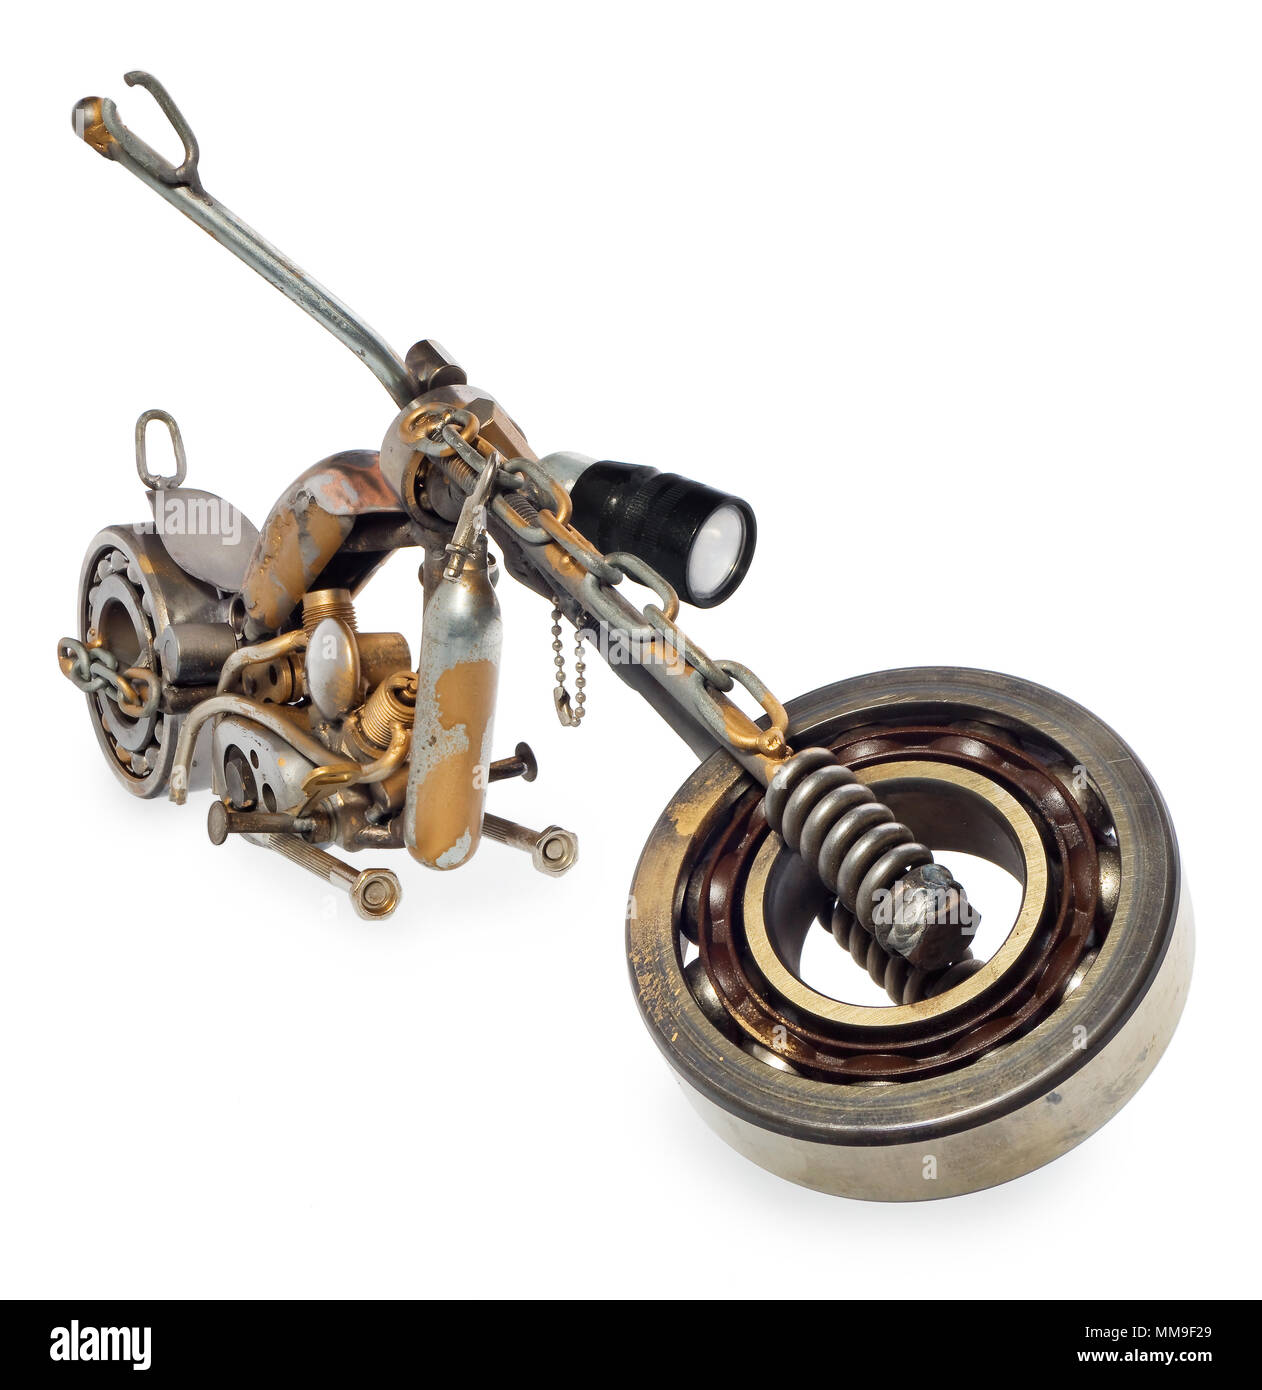 Miniatura artesanal de una motocicleta tipo chopper. Vehículo decorativas  hechas de piezas mecánicas, rodamientos, cables, alquiler de velas,  tornillos, placas. Toy en plata-g Fotografía de stock - Alamy